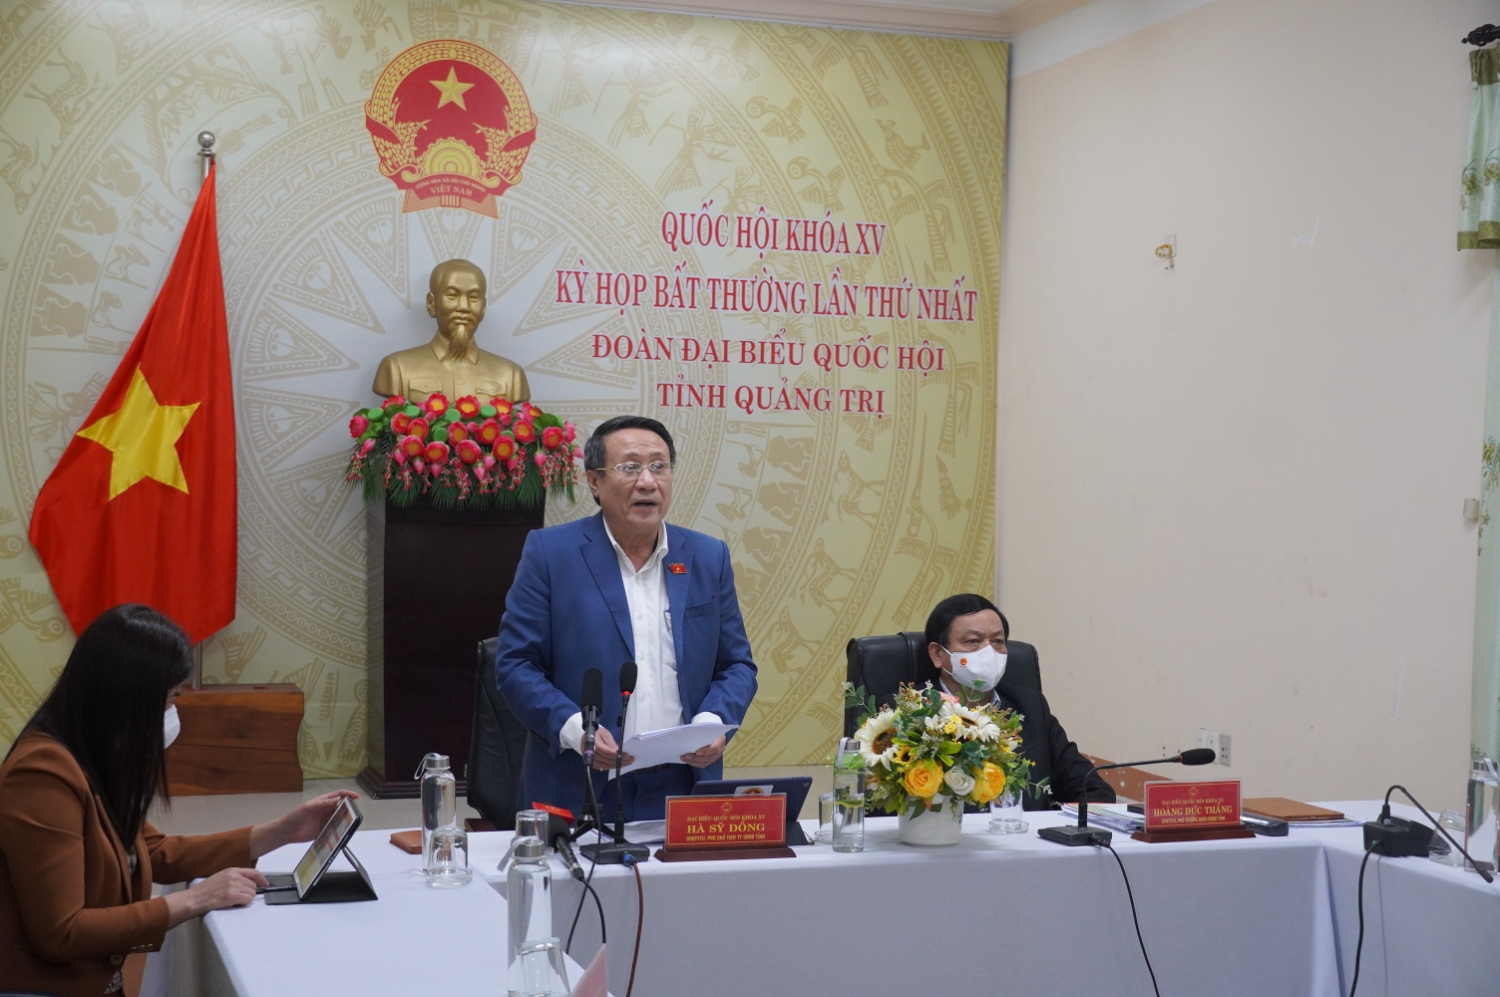 Phó Chủ tịch Thường trực UBND tỉnh, đại biểu Quốc hội Hà Sỹ Đồng tham gia ý kiến tại điểm cầu Quảng Trị